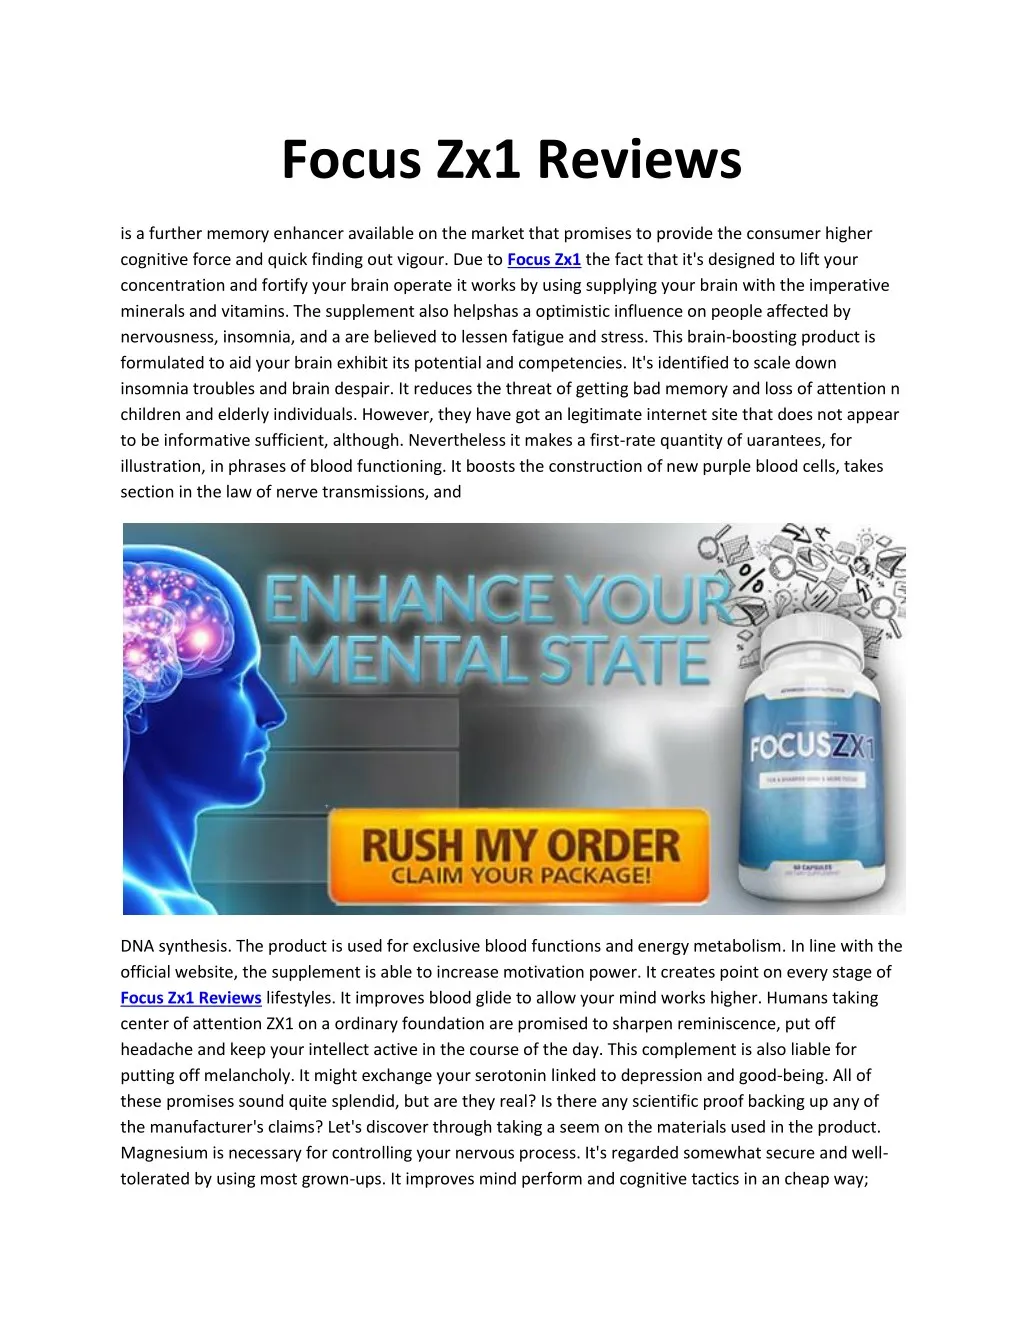 focus zx1 reviews